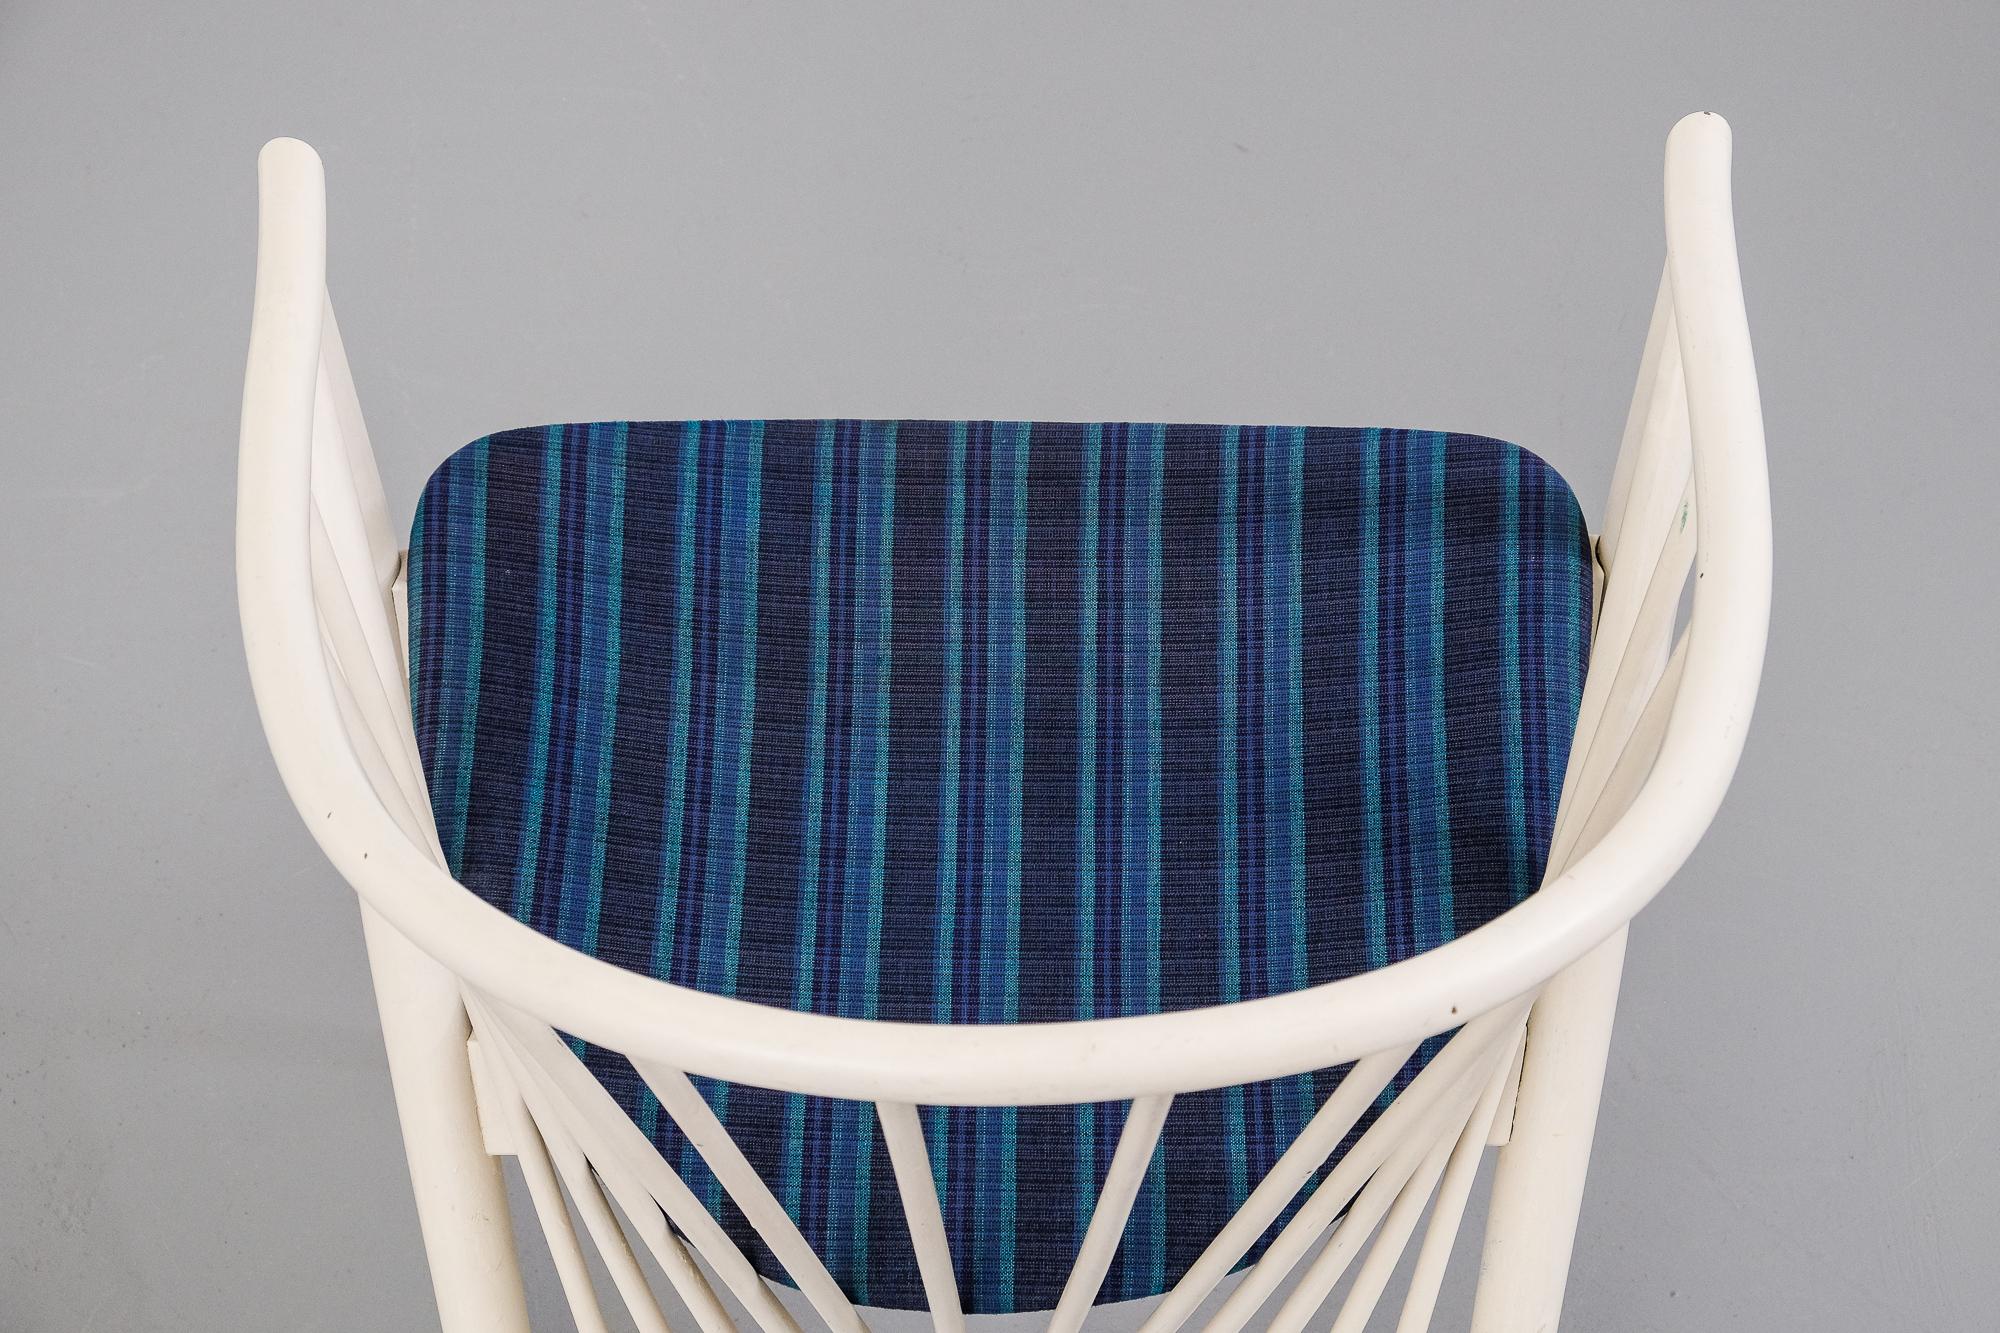 Fabric Sun Feather Chair by Sonna Rosén for Nässjö Stolfabrik, 1950s